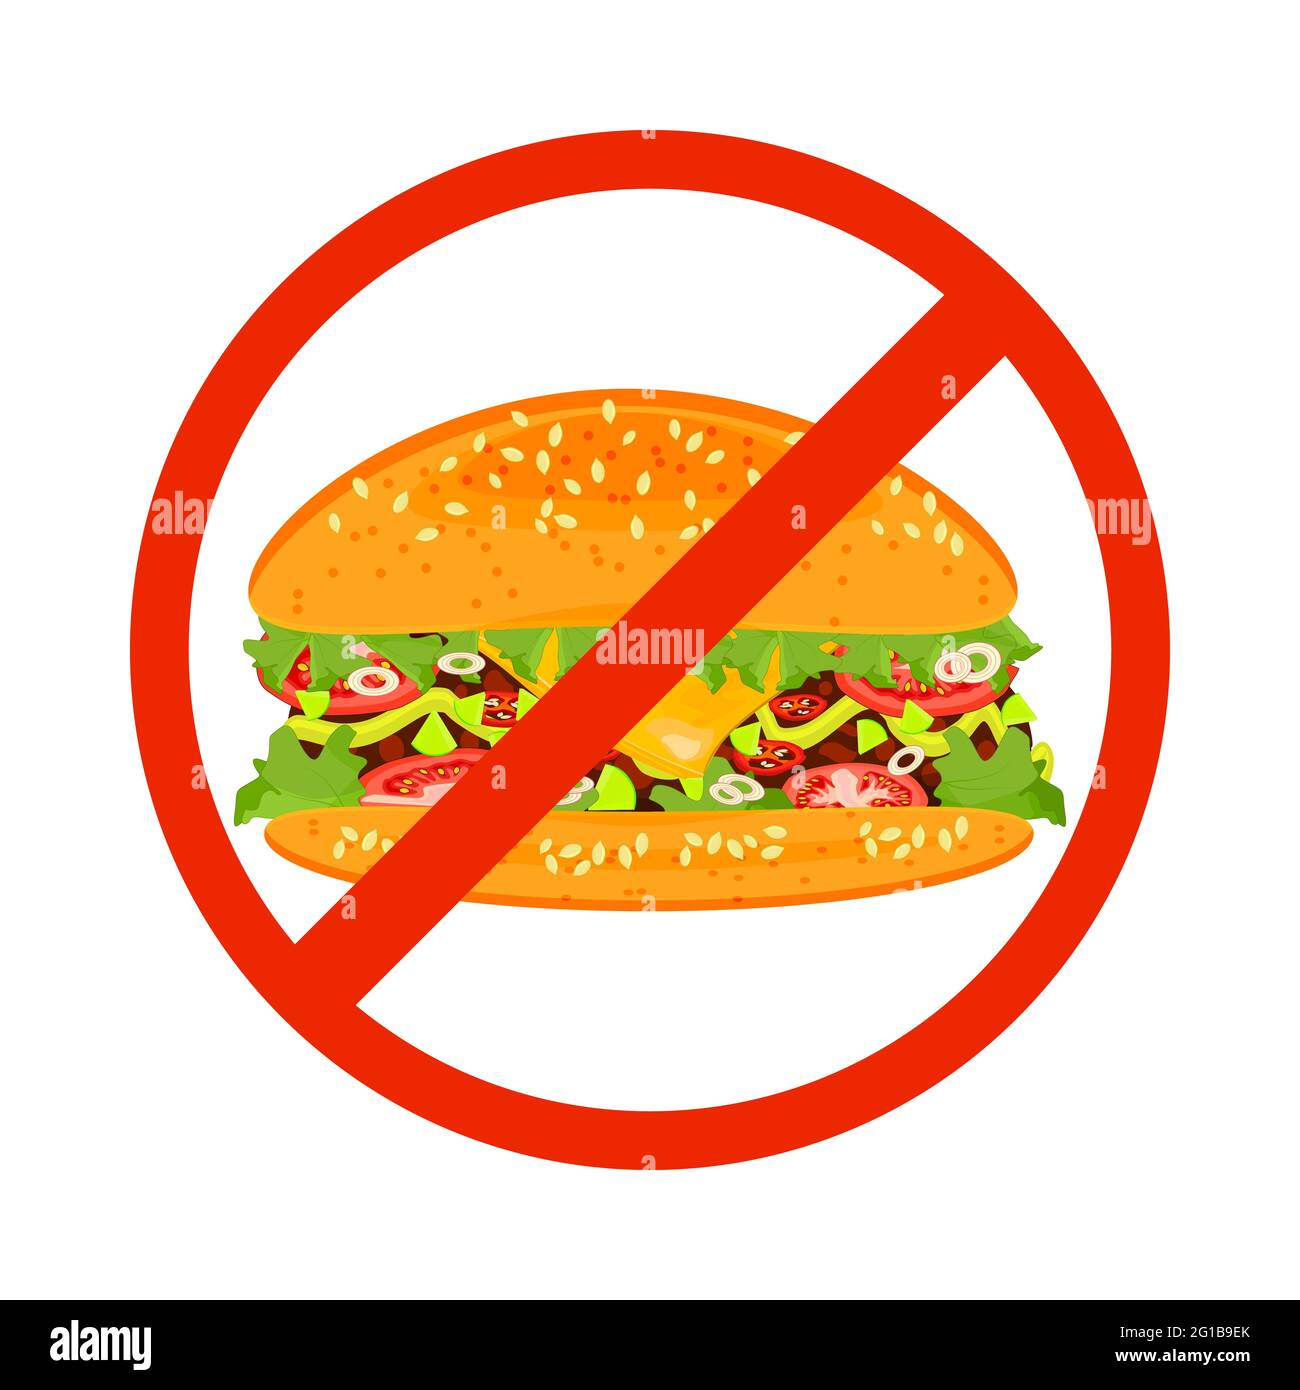 Kein Fastfood-Schild auf weißem Hintergrund isoliert. Hamburger innen rotes Verbotsschild. Gefahrensiegel für Fast Food. Ungesunde Ernährung Konzept.Vektor-Illustration Stock Vektor